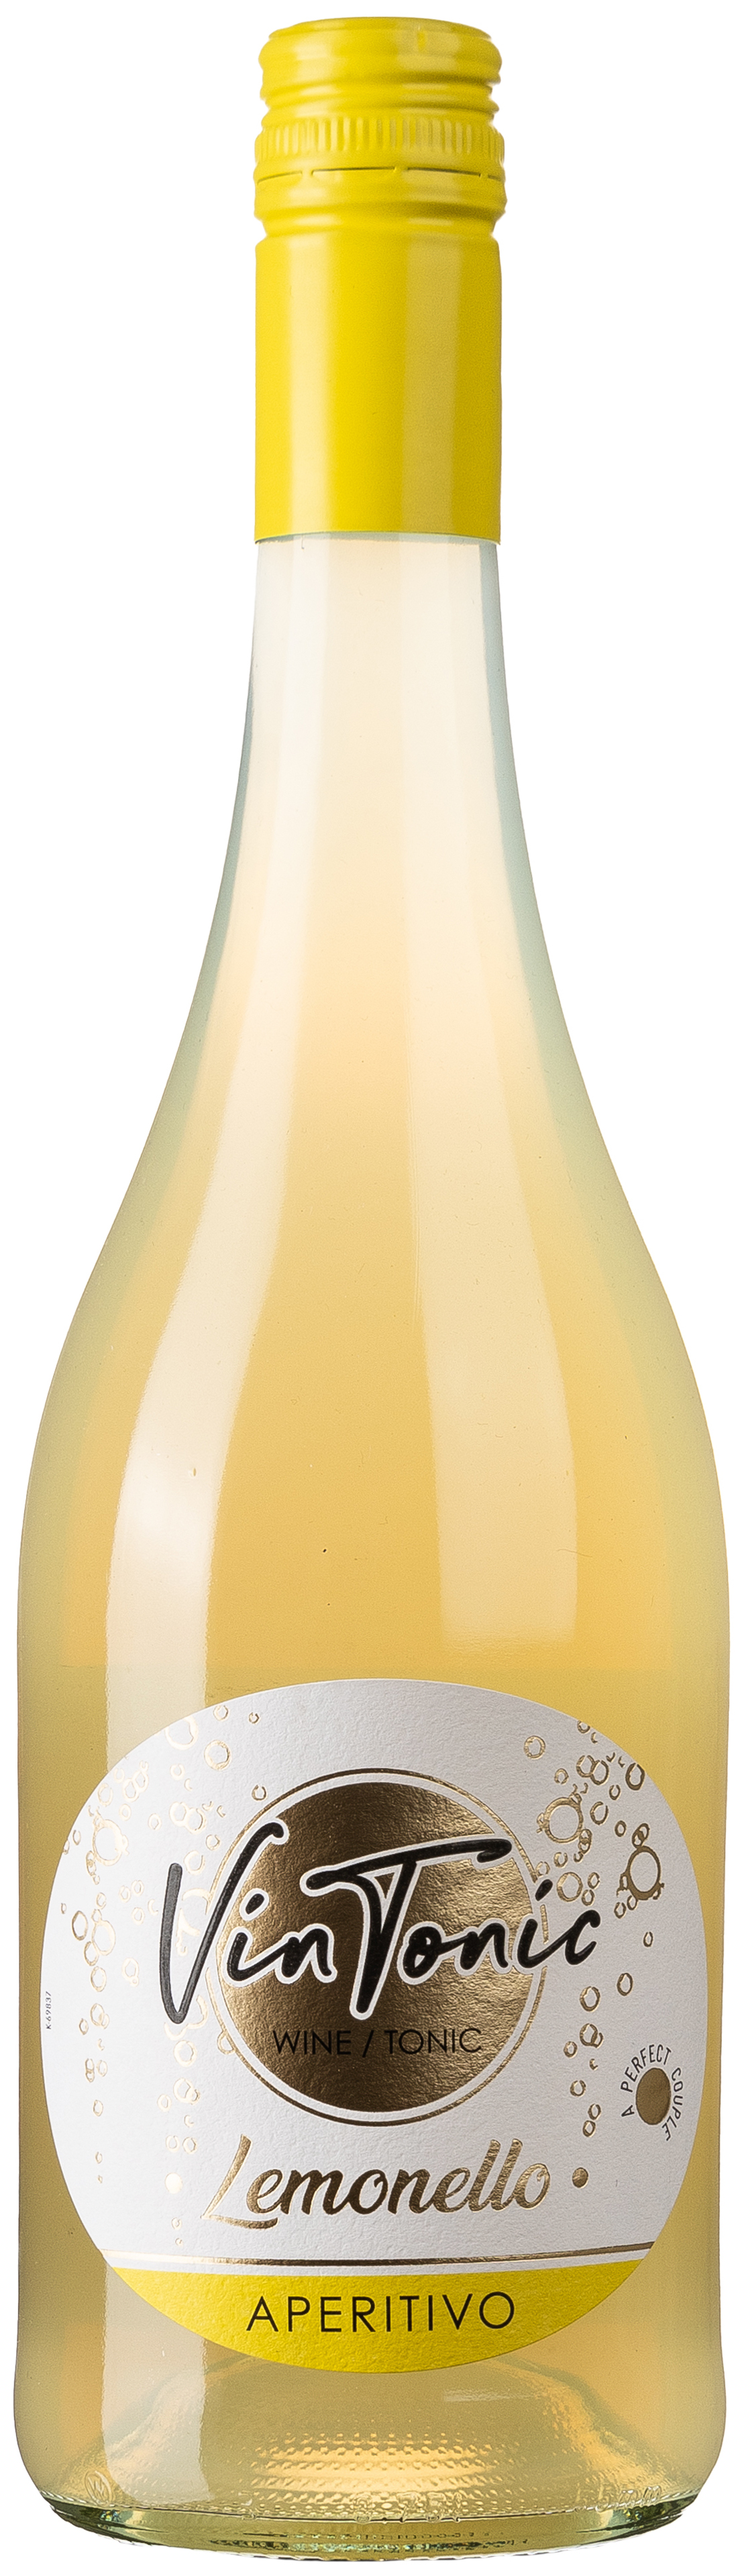 Vin Tonic Lemonello Aperitivo 5,7% vol. 0,75L